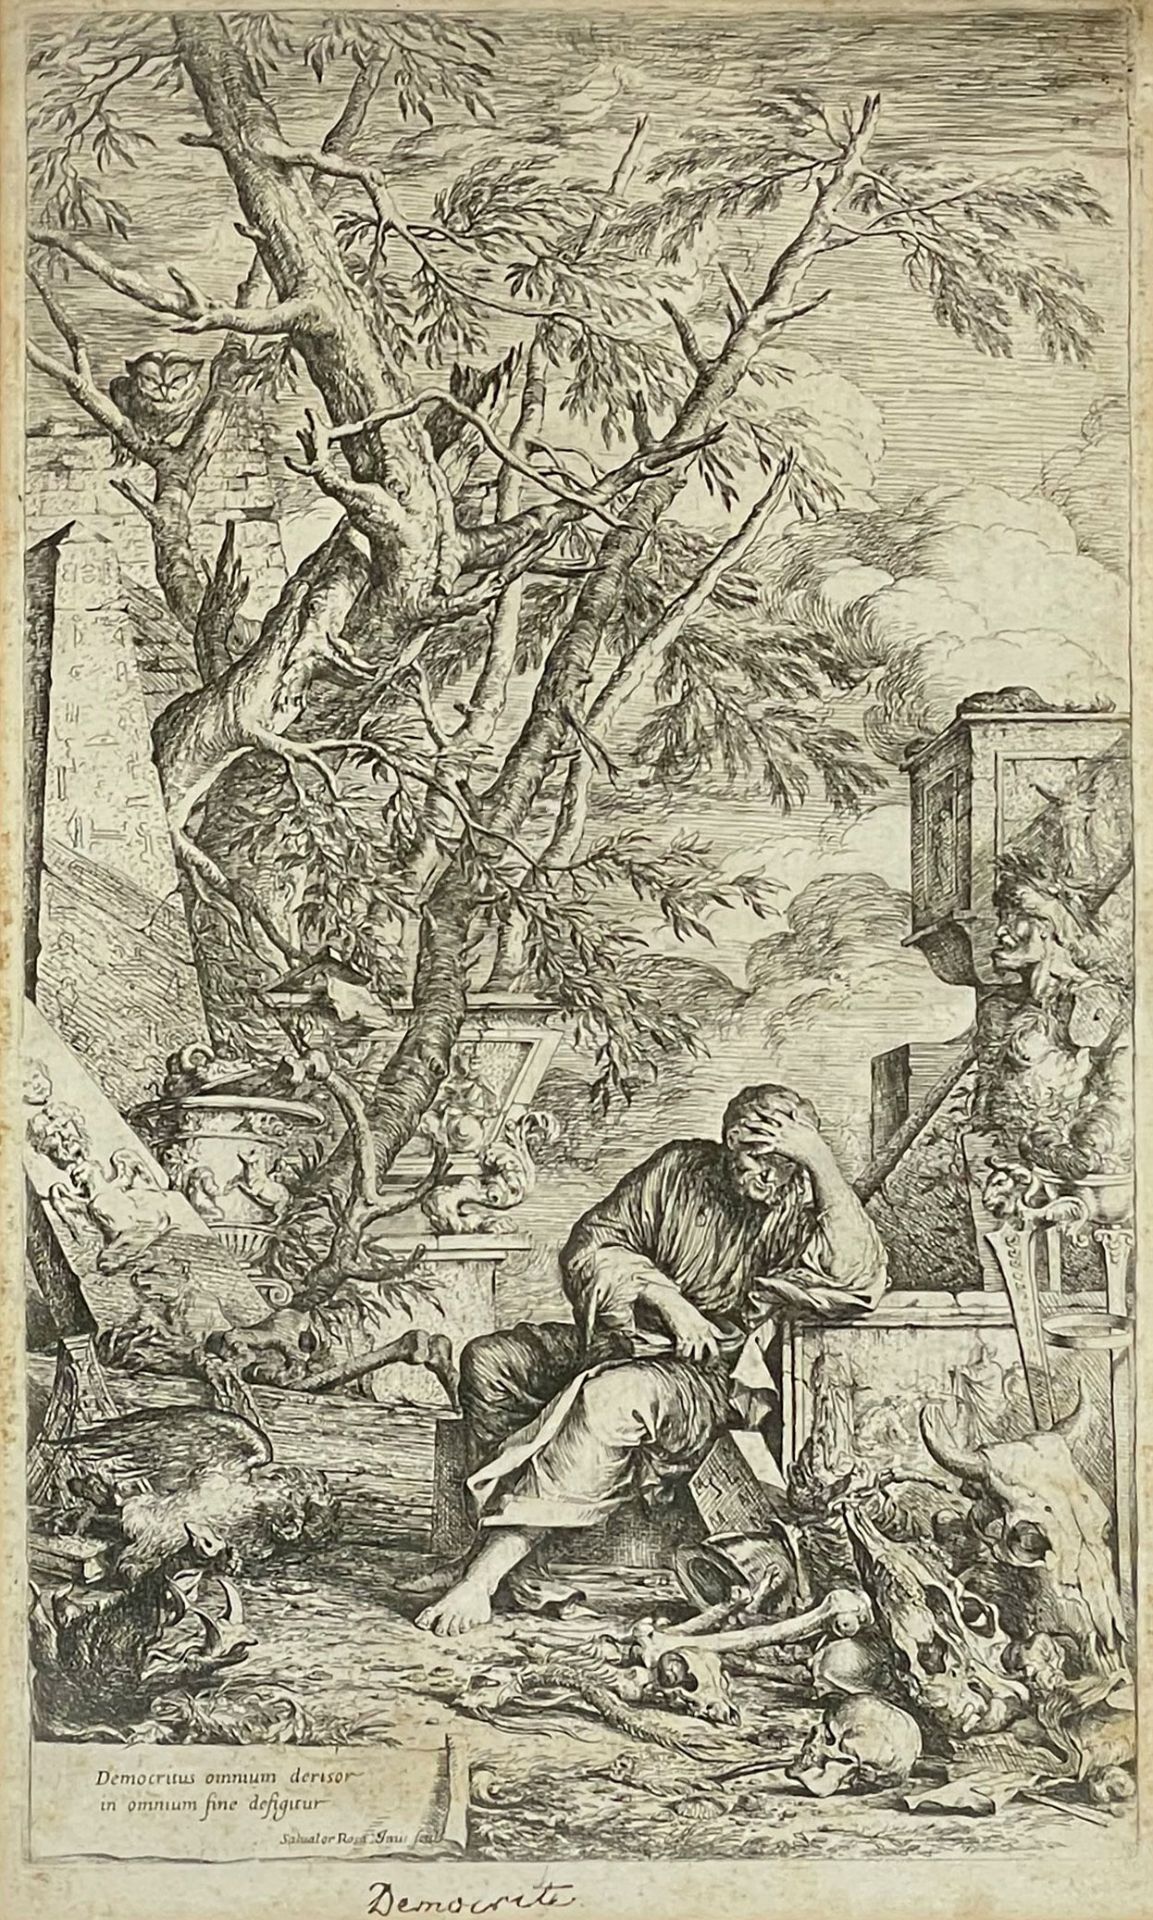 Salvator ROSA (1615 - 1673). "Democrete".